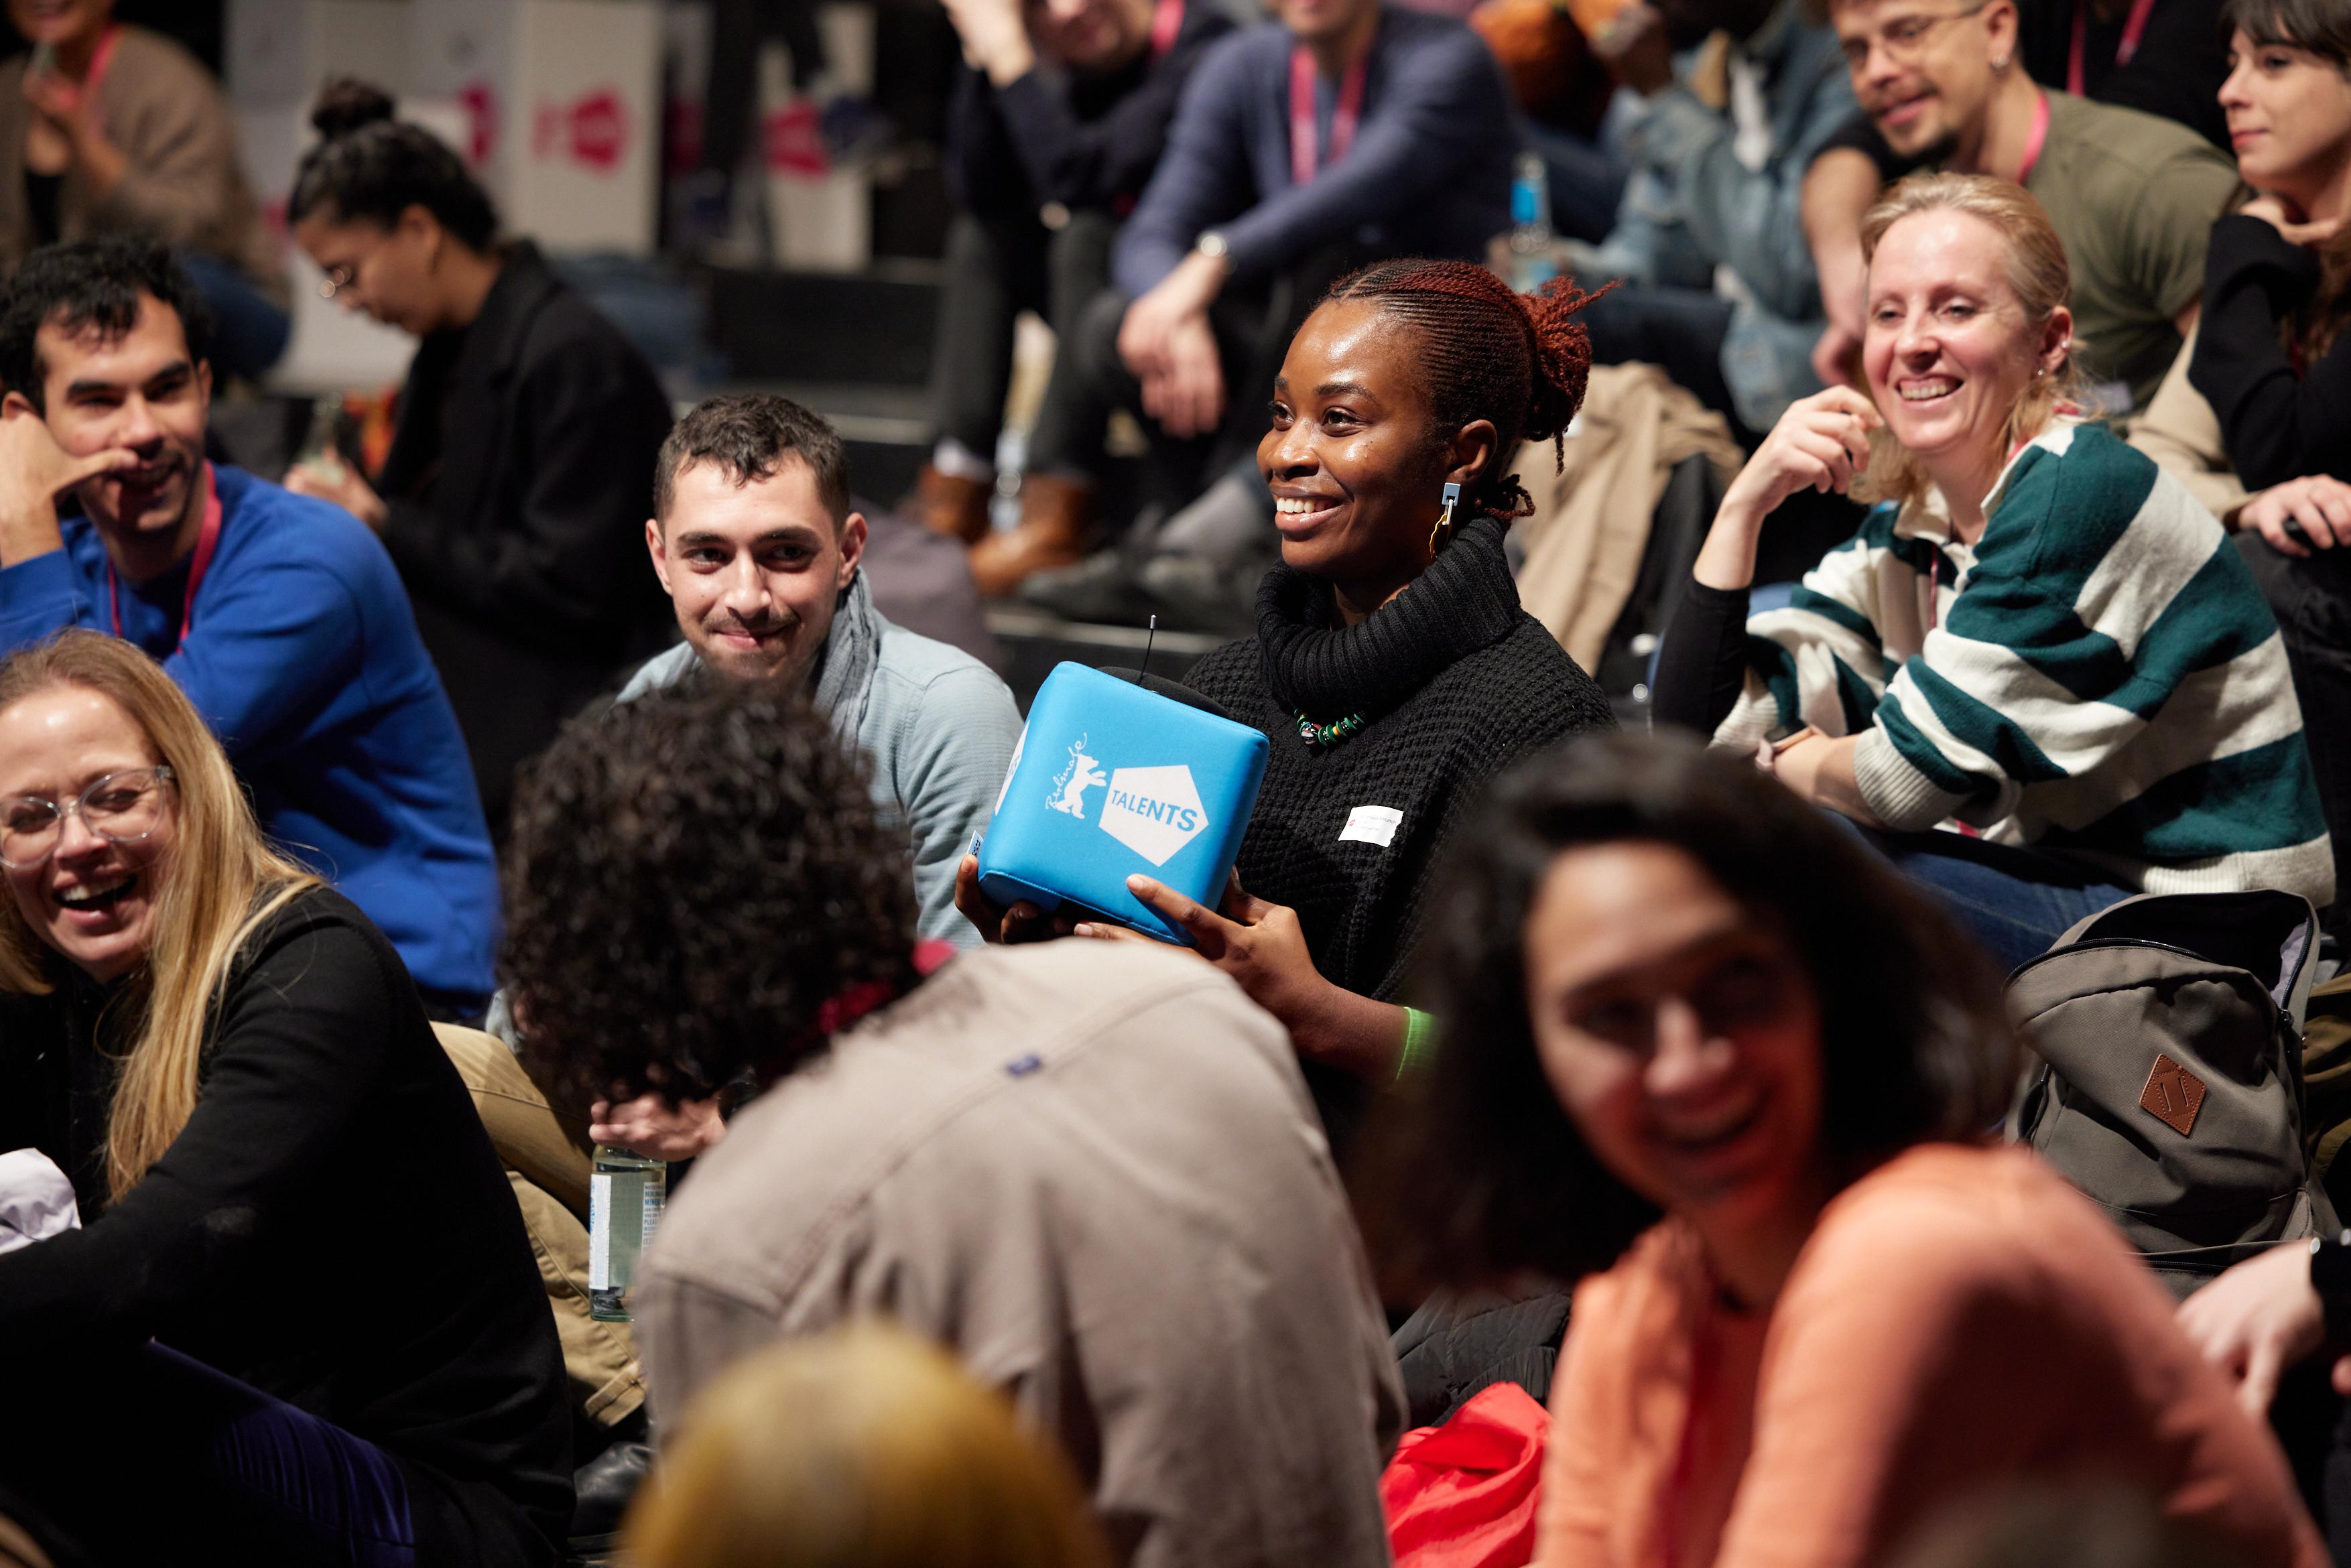 Mehrere junge Menschen sitzen auf Stühlen. Eine Person in der Mitte hält einen blauen, Würfel-förmigen Lautsprecher mit dem Aufdruck "Berlinale Talents" in den Händen.